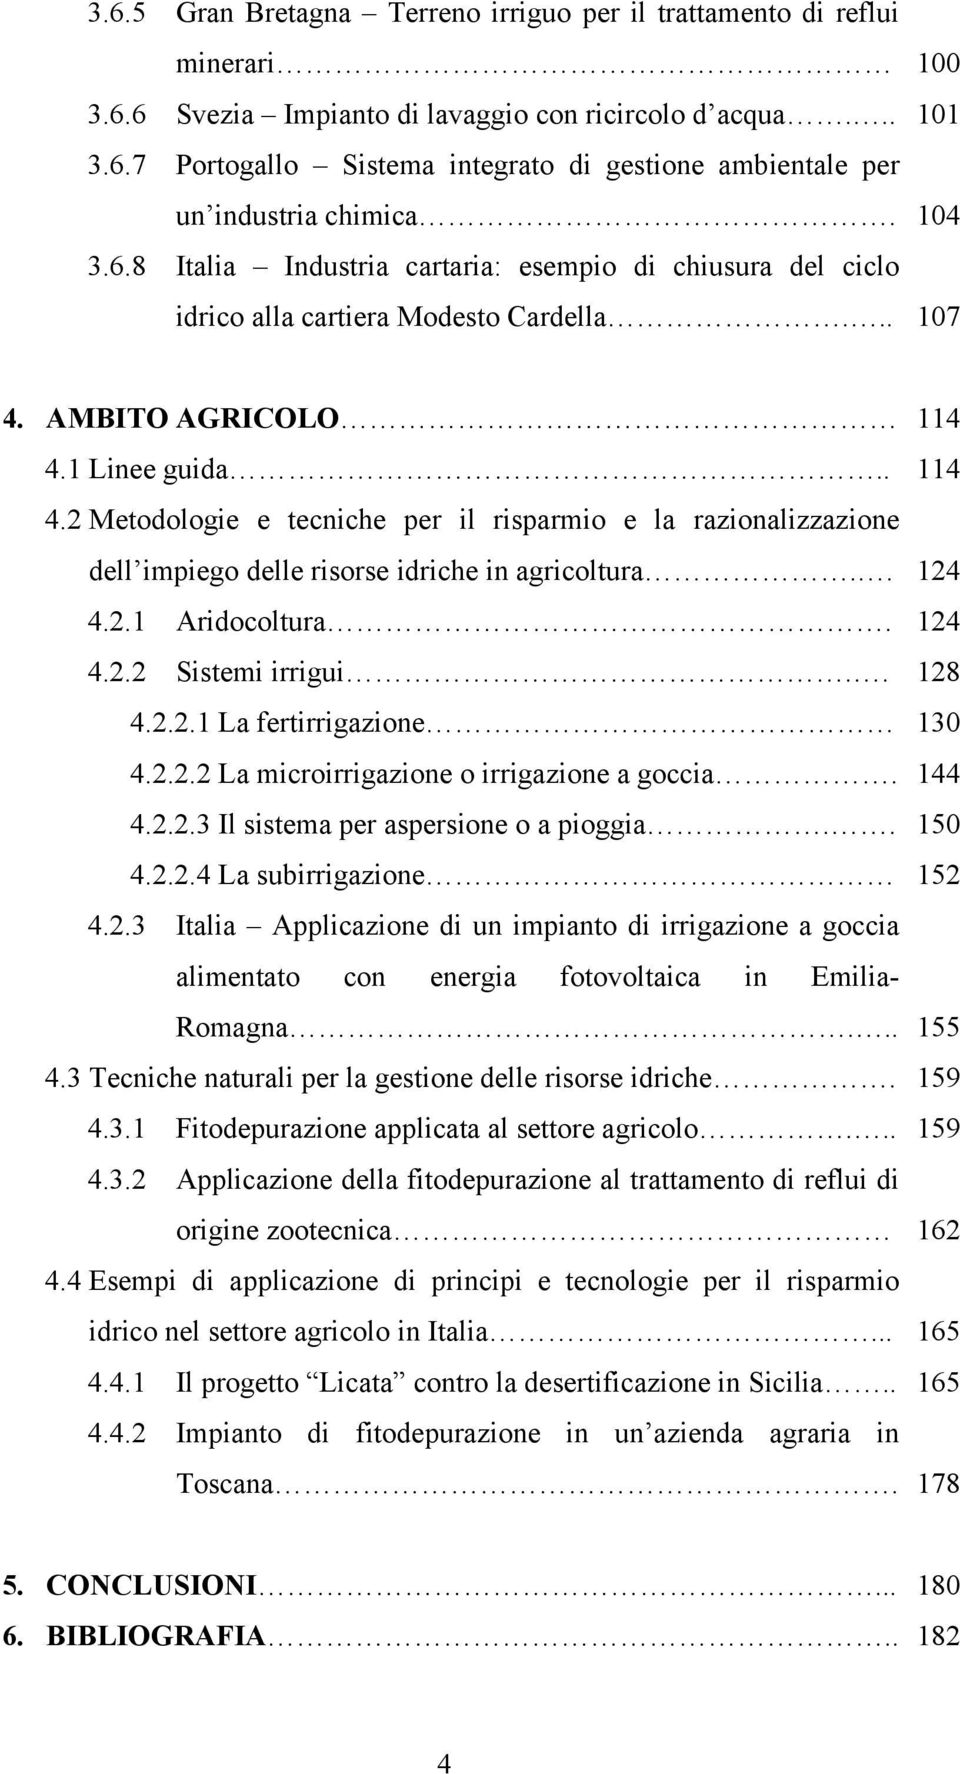 AMBITO AGRICOLO 4.1 Linee guida.. 4.2 Metodologie e tecniche per il risparmio e la razionalizzazione dell impiego delle risorse idriche in agricoltura.. 4.2.1 Aridocoltura. 4.2.2 Sistemi irrigui.. 4.2.2.1 La fertirrigazione 4.